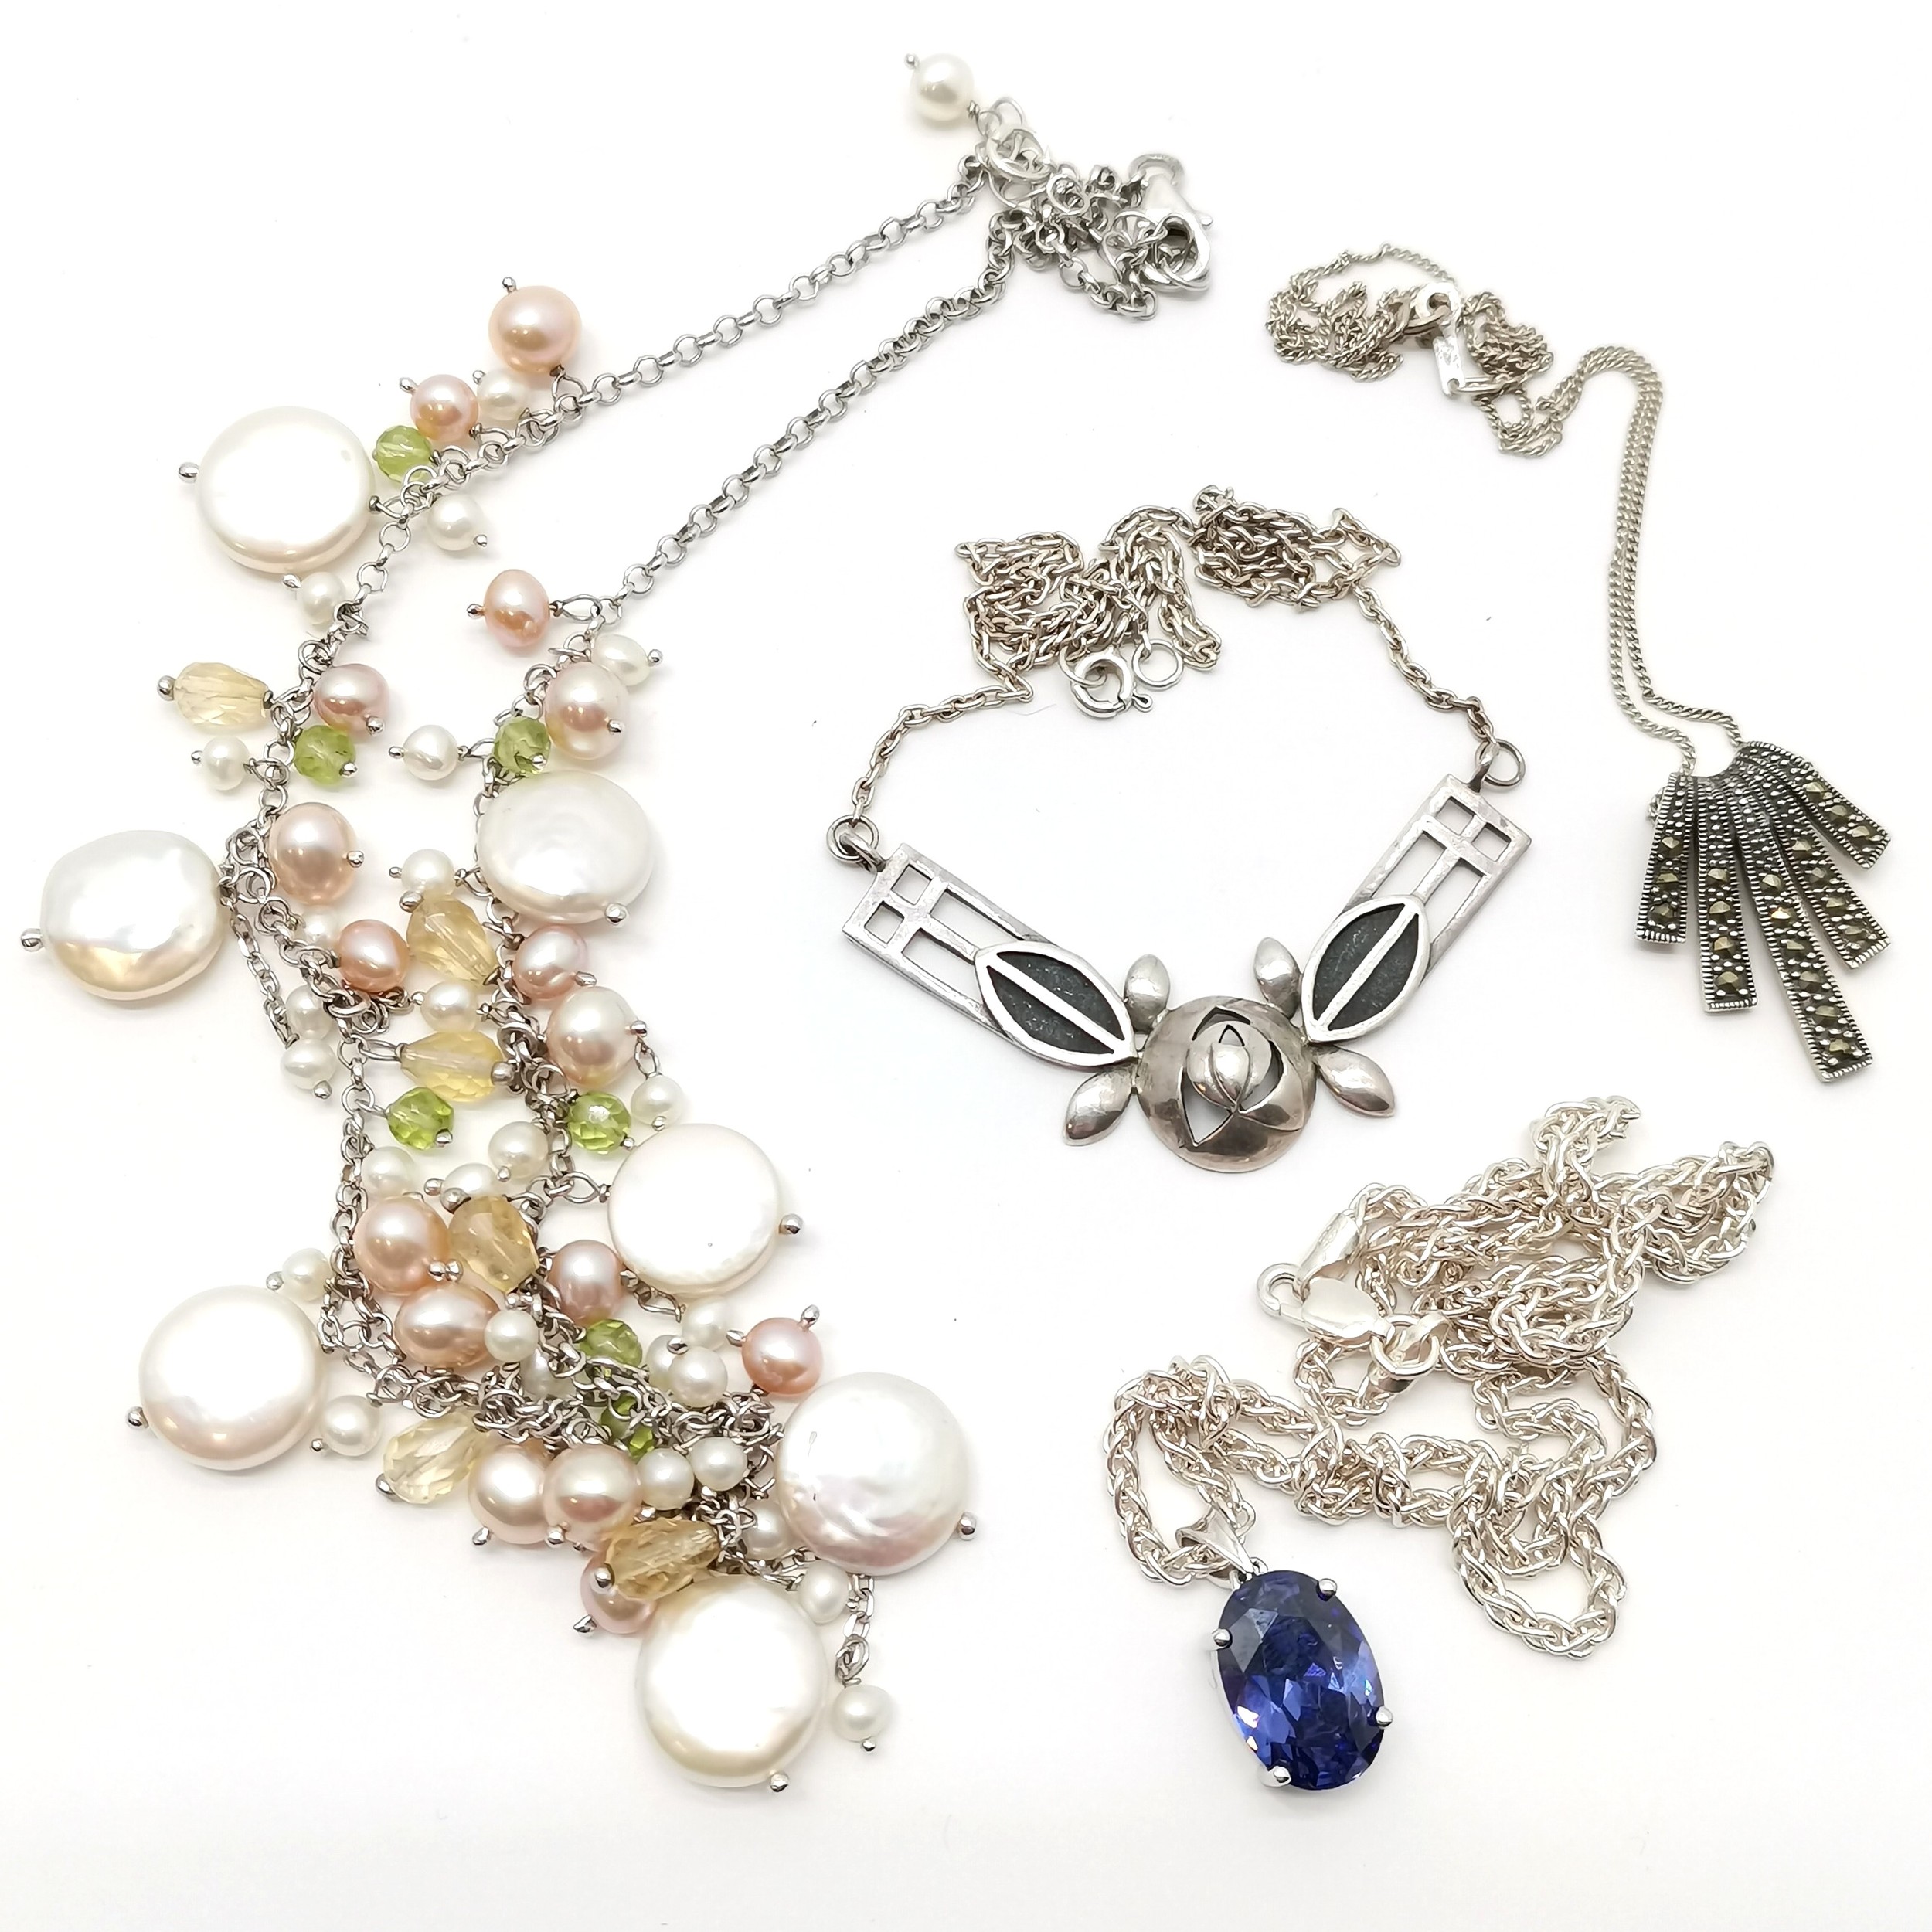 4 x silver necklaces inc Art Nouveau design by K&SH, purple stone set on a 42cm chain, pearl etc - - Image 3 of 5